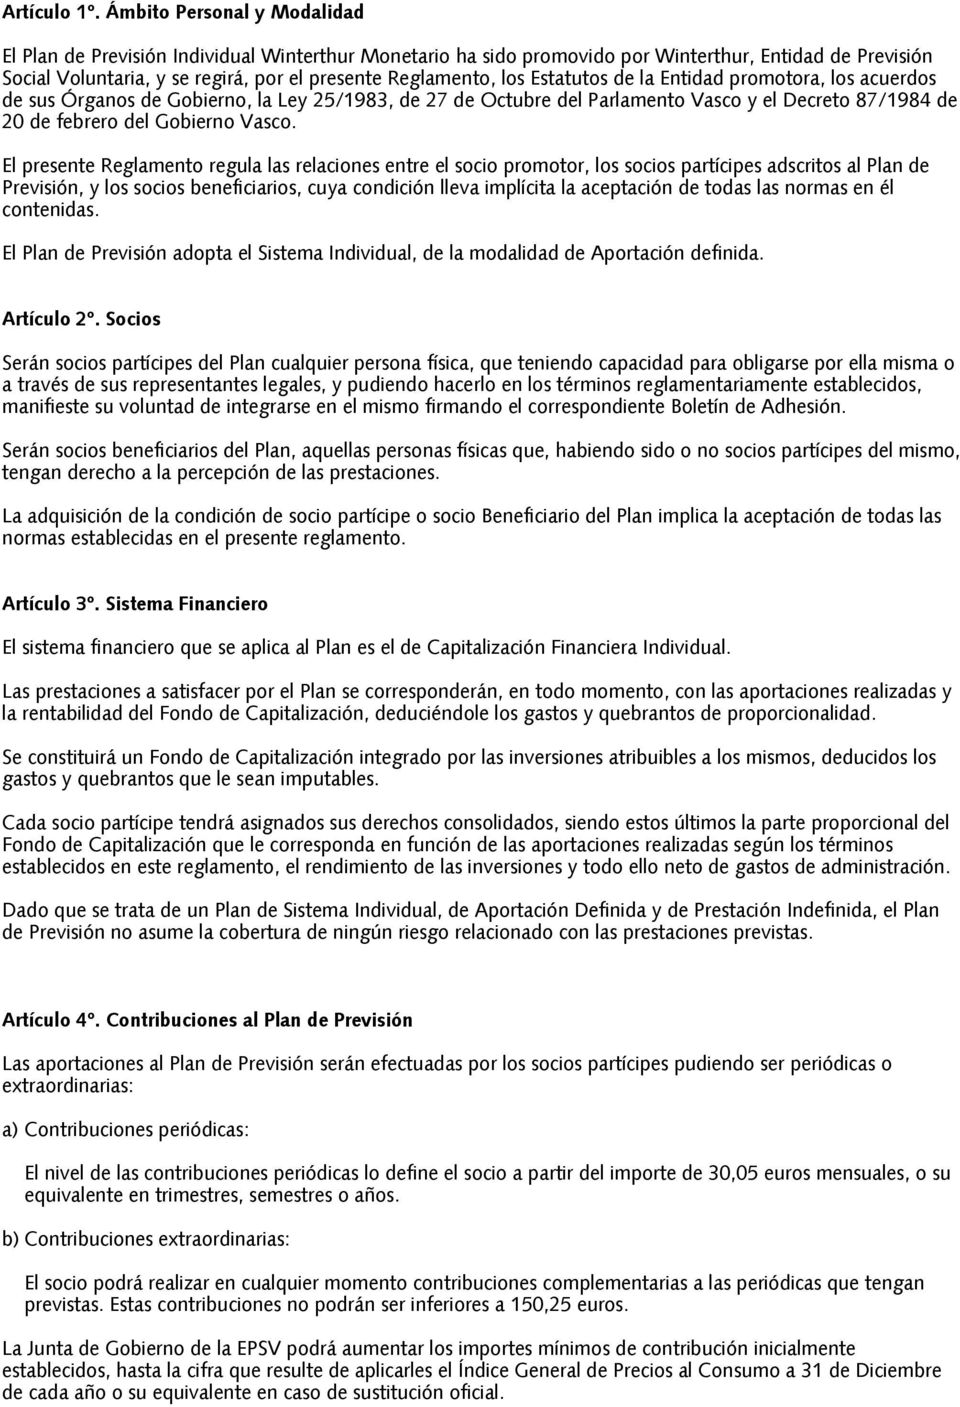 Estatutos de la Entidad promotora, los acuerdos de sus Órganos de Gobierno, la Ley 25/1983, de 27 de Octubre del Parlamento Vasco y el Decreto 87/1984 de 20 de febrero del Gobierno Vasco.